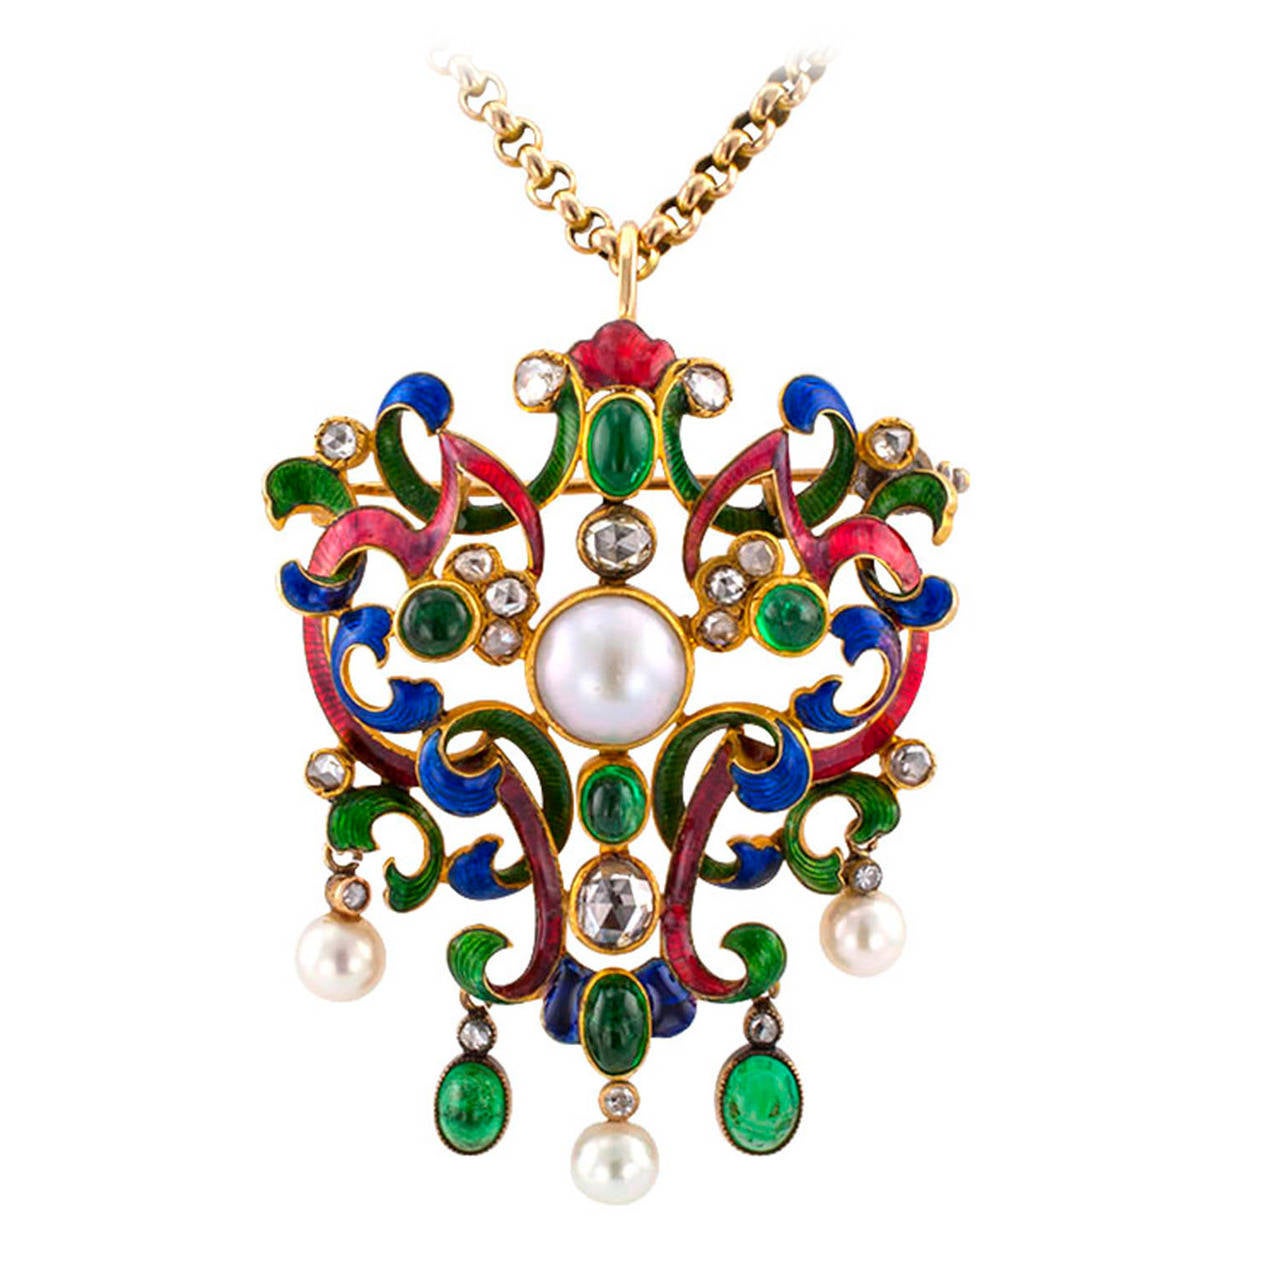 Enameled Antique Bejeweled Brooch Pendant